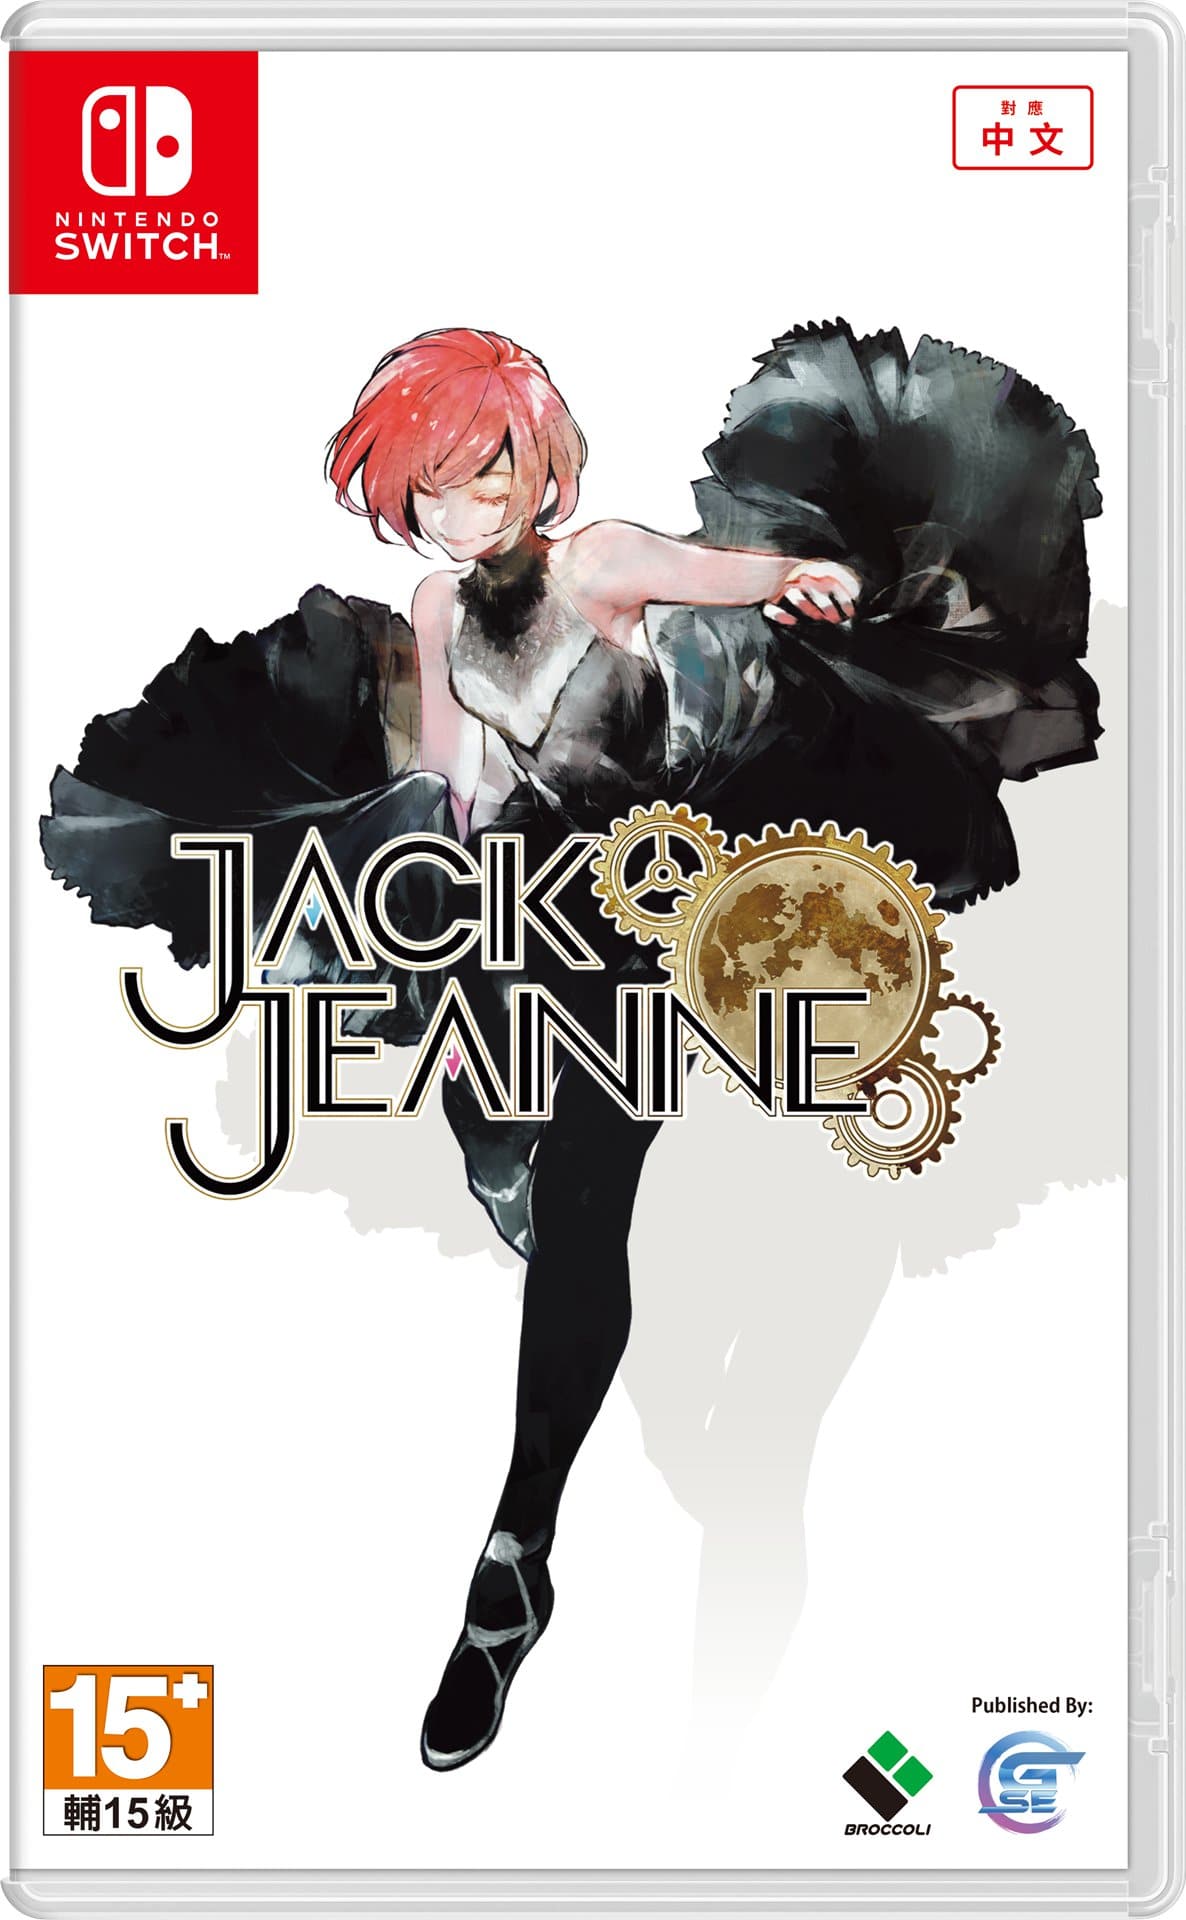 Jack-Jeanne_Packshot